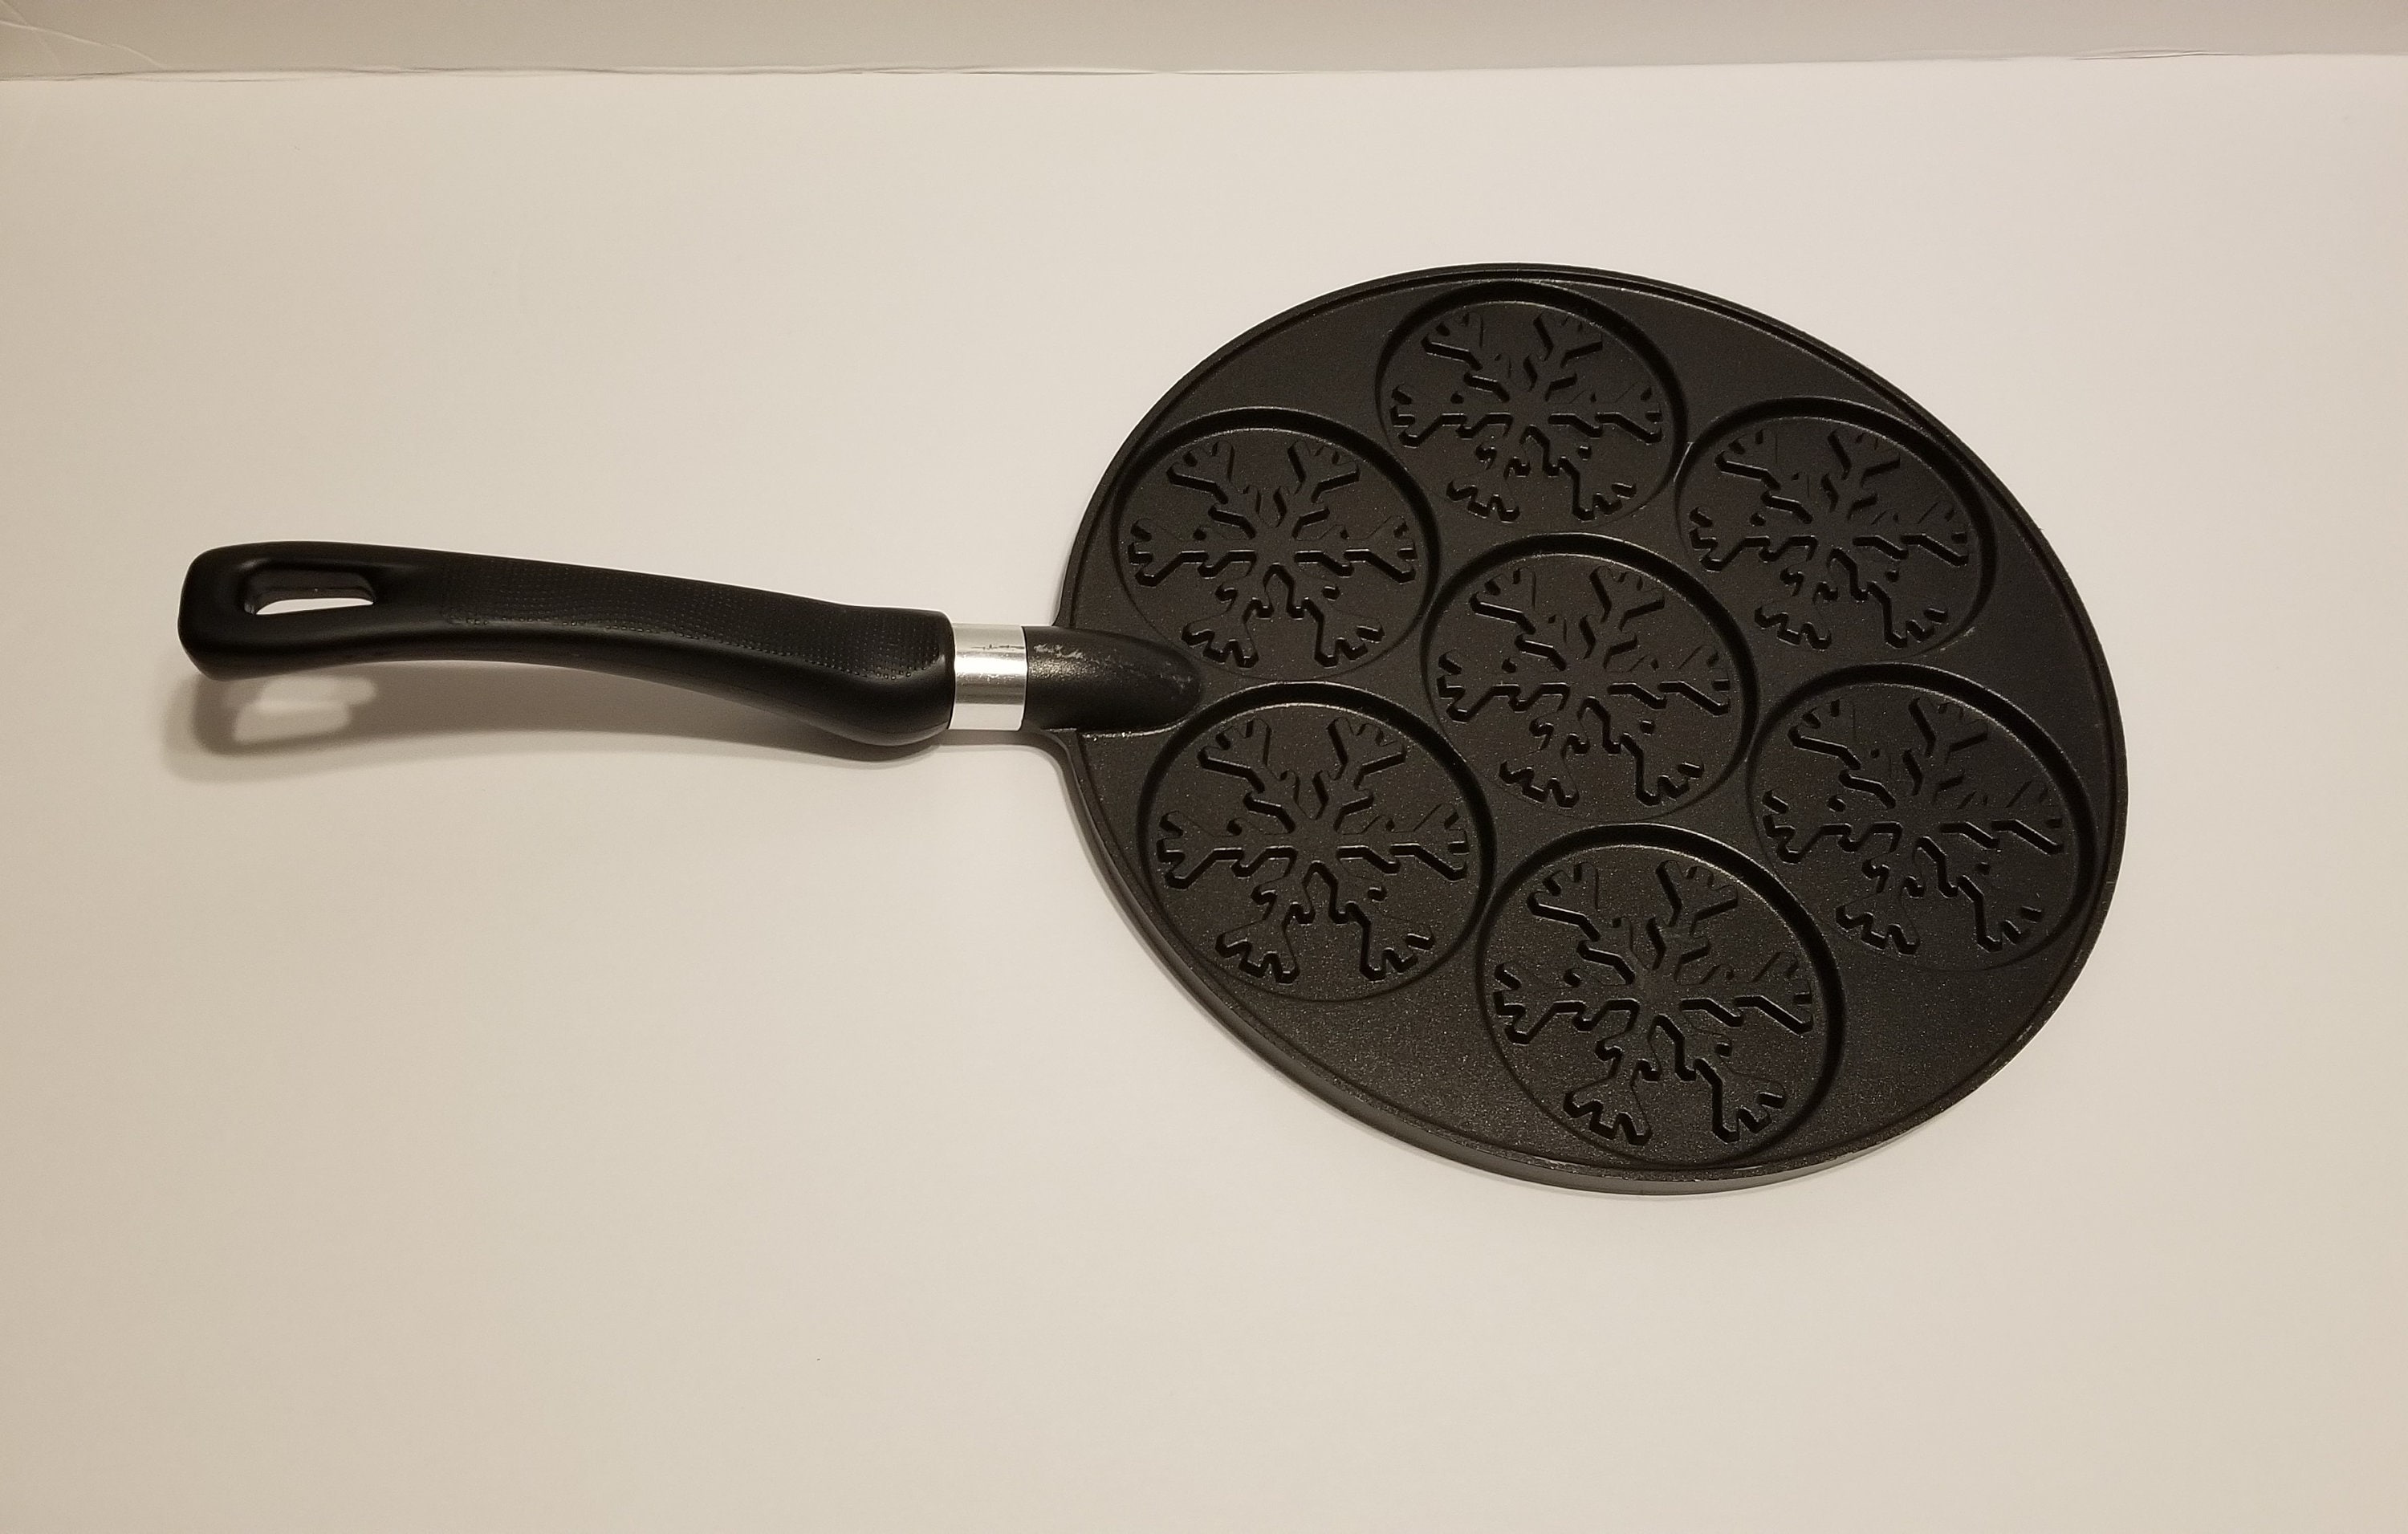 Nordic Ware Snowflakes Pancake Pan